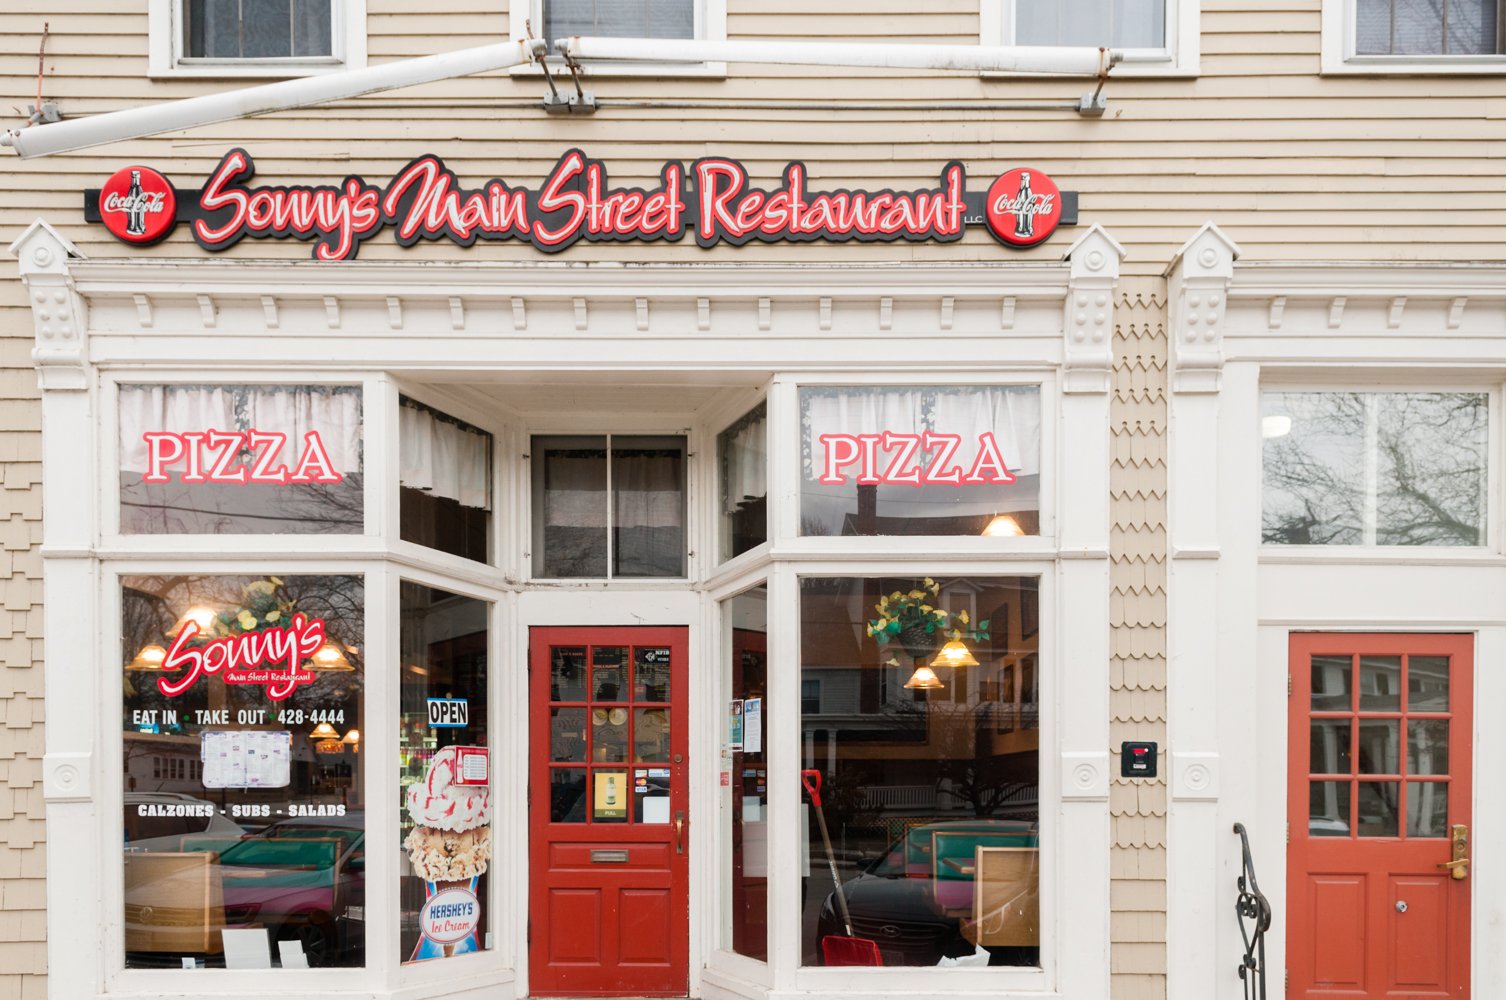 Sonny's Main Street Restaurant